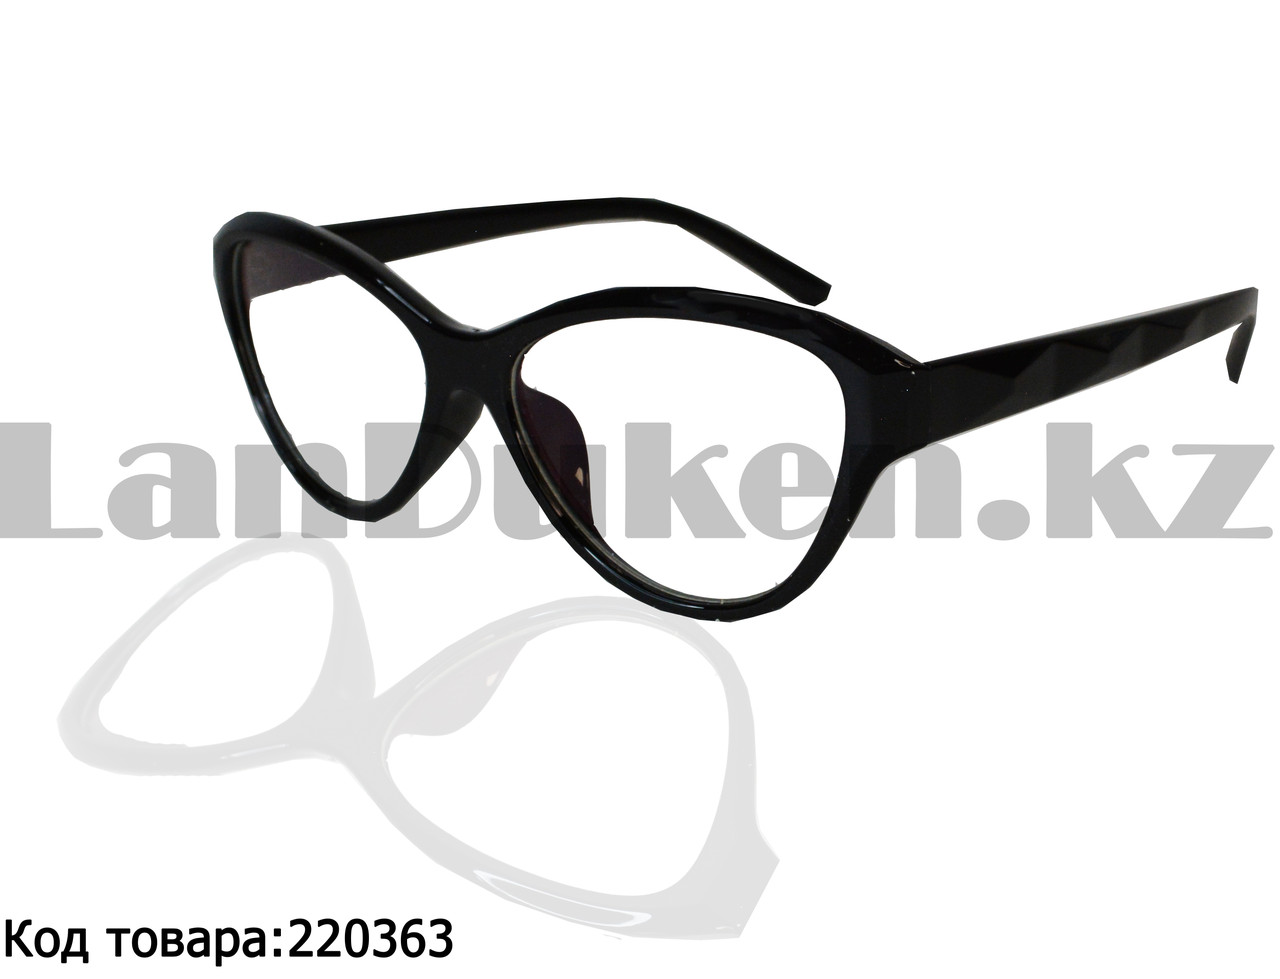 Компьютерные очки с толстой душкой Кошачья оправа глянцевые черные С1